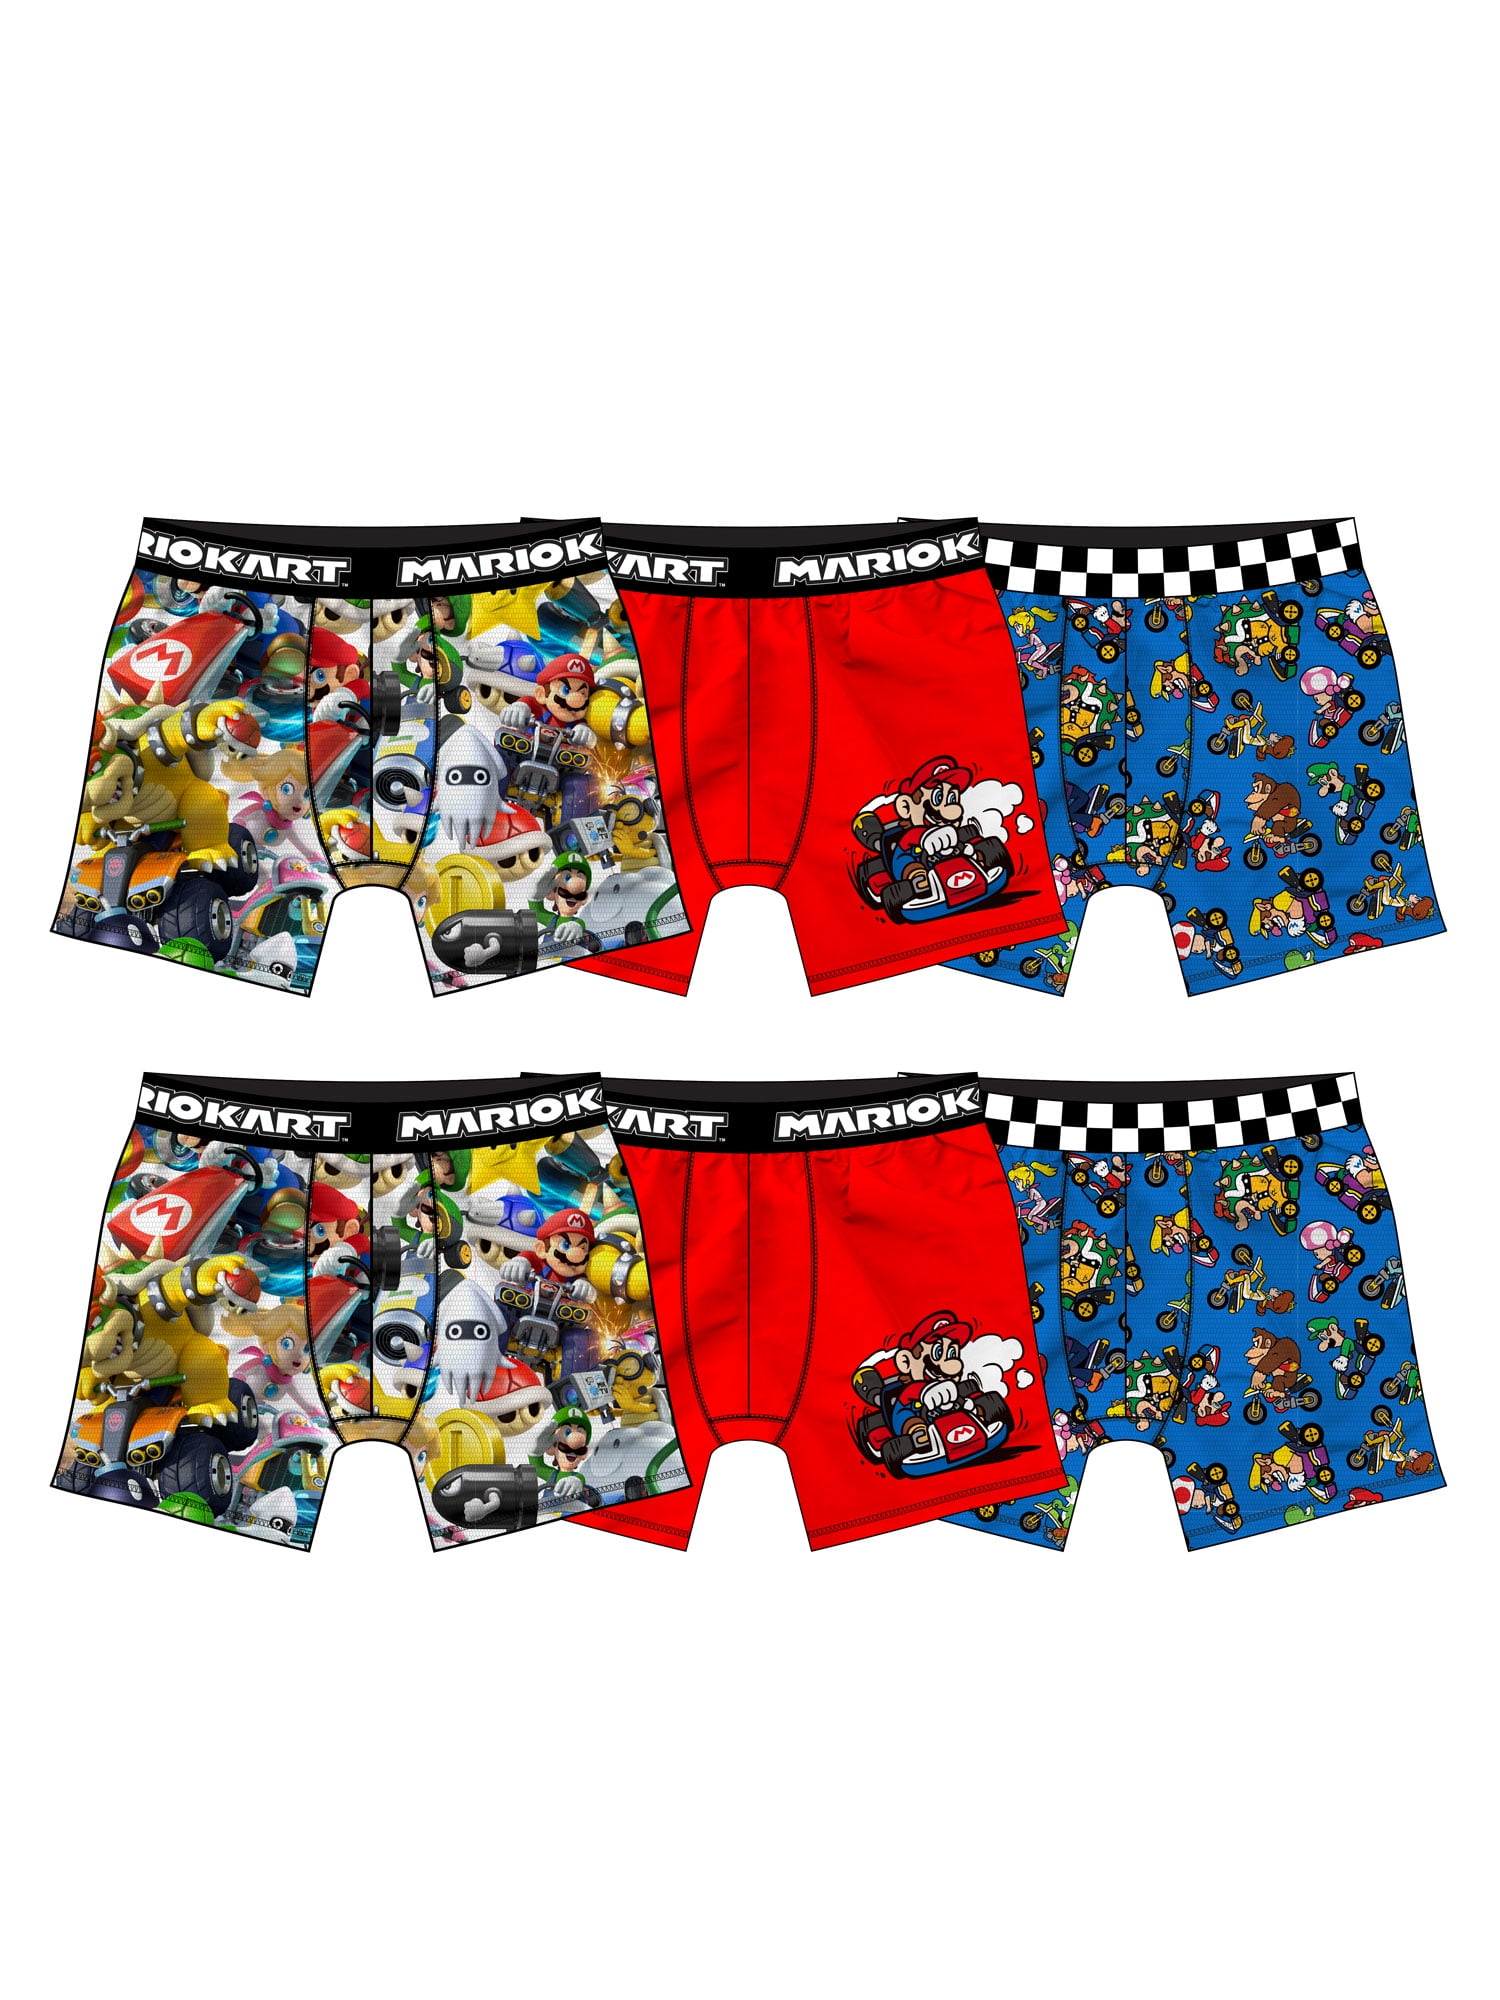 Mario Cart Boys Underwear, 6 Pack Boxer Briefs Sizes 4 - 10 